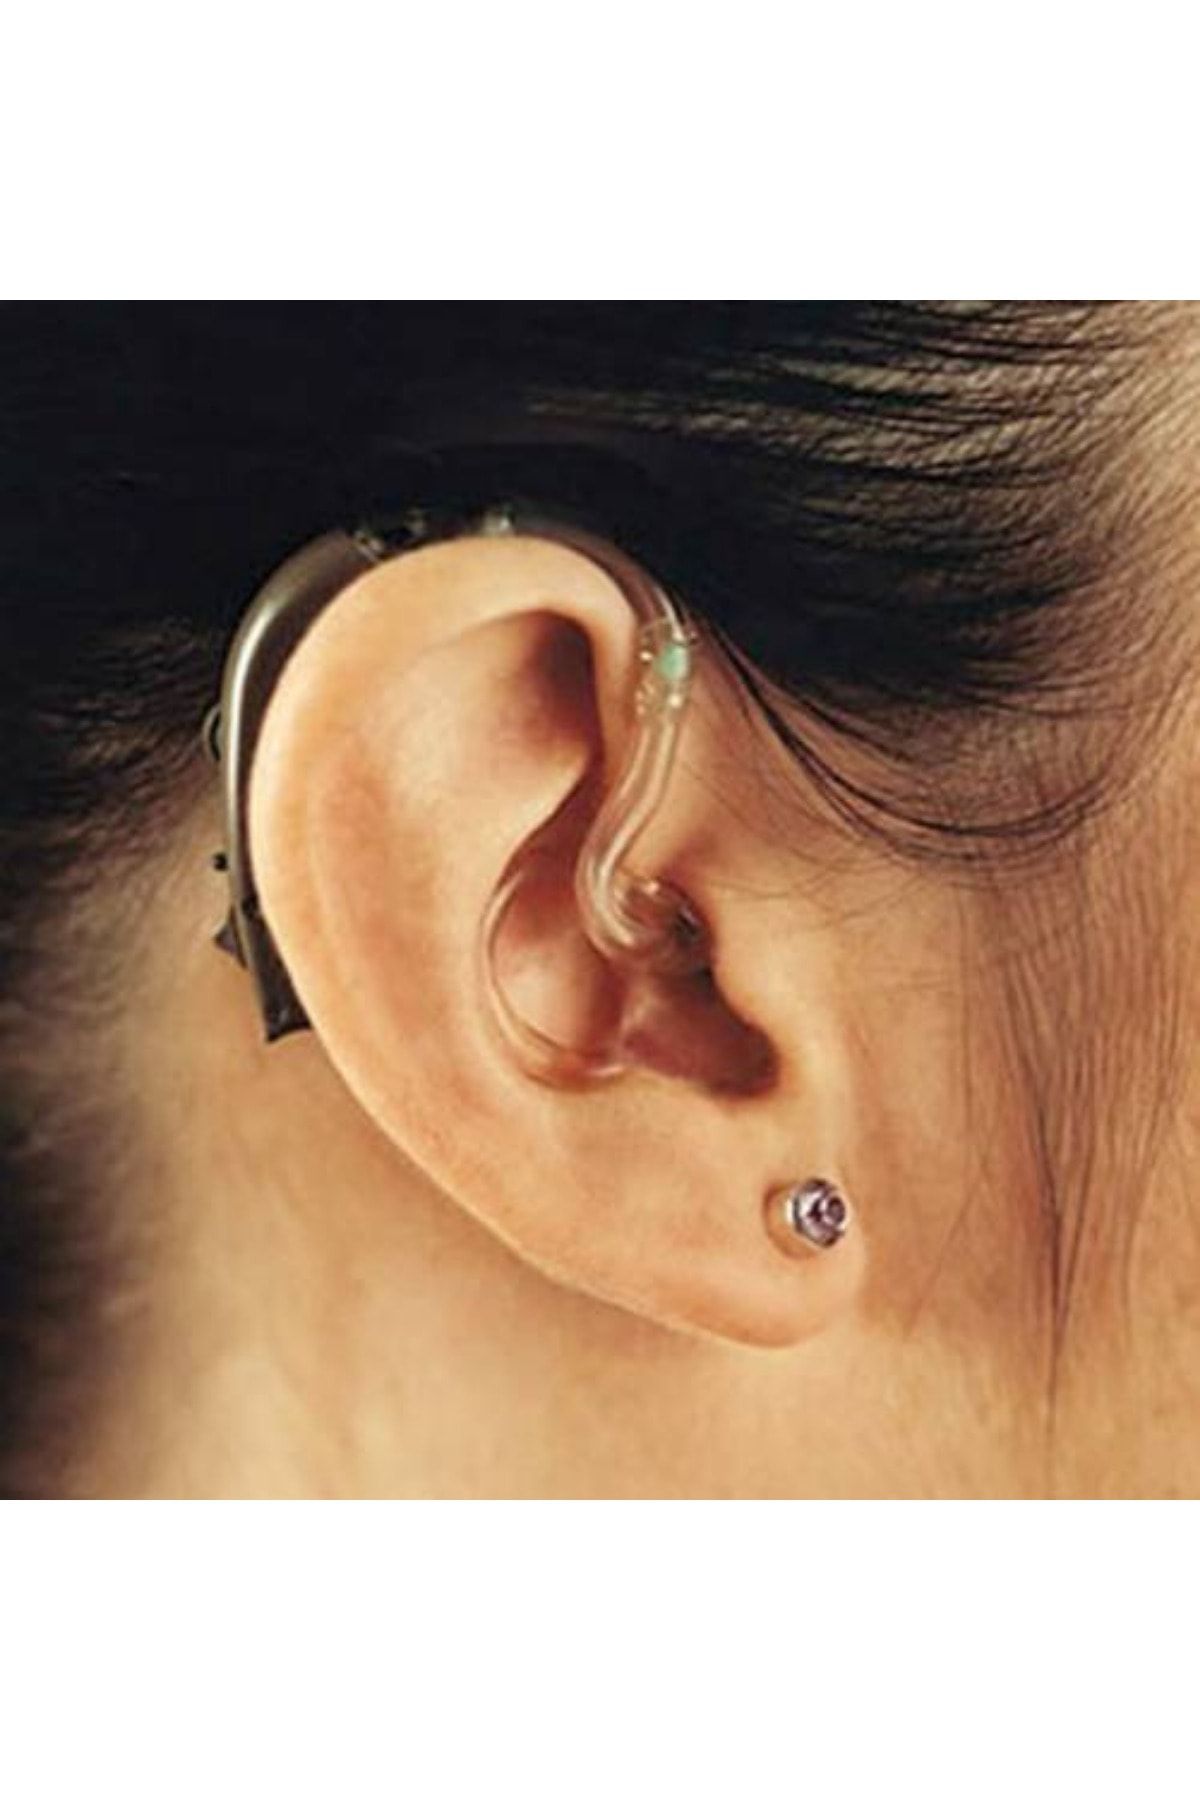 Genel Markalar 100 Adet Işitme Cihaz Hortumu Kulak Arkası Tüm Cihazlar Için Kulak Cihazı Hortumu 100'lü Paket